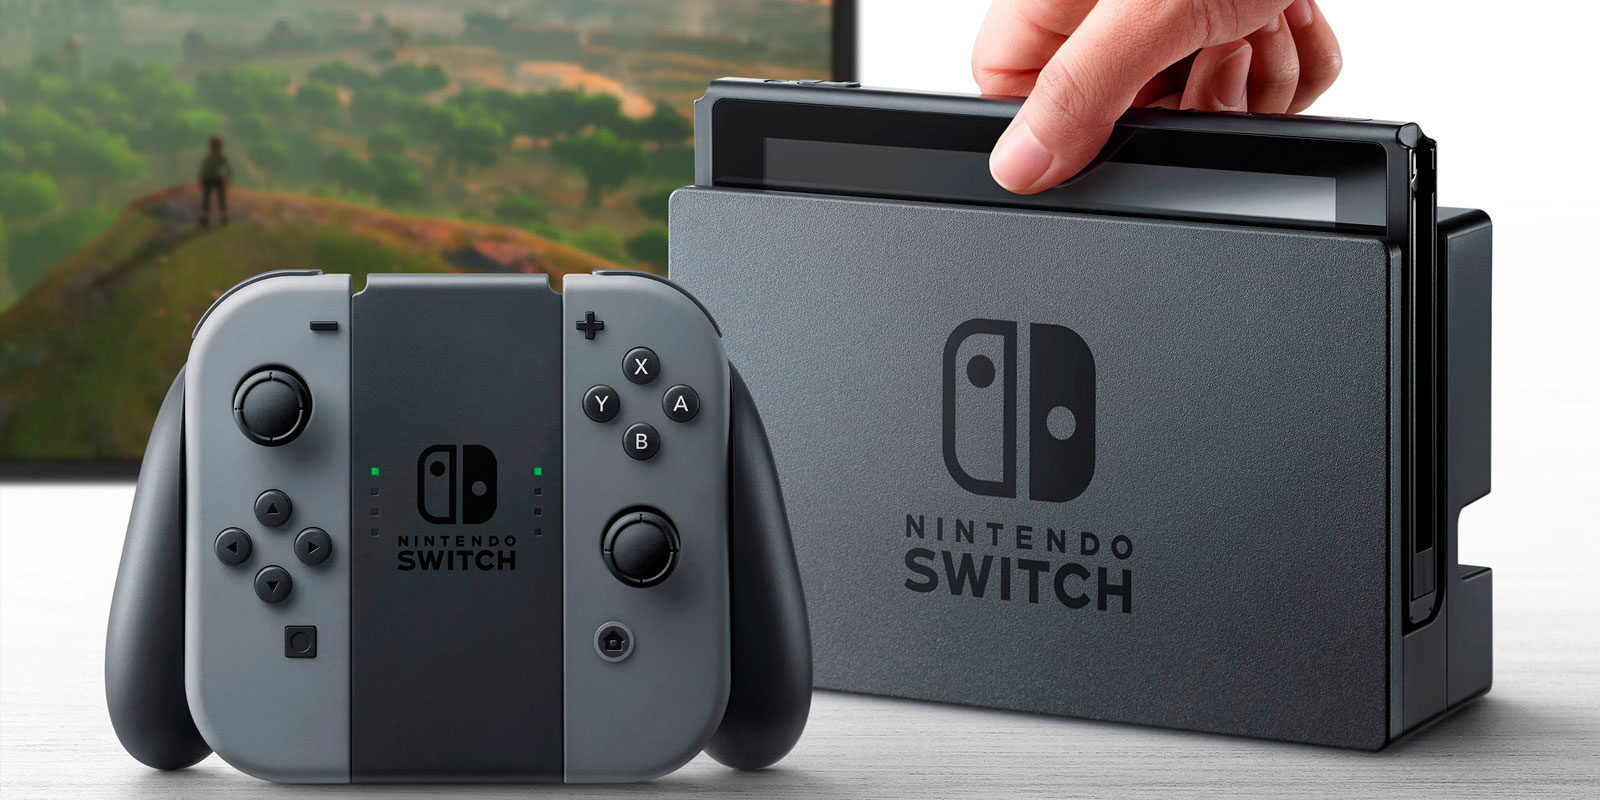 Nintendo Switch fue la consola más vendida en Estados Unidos durante marzo